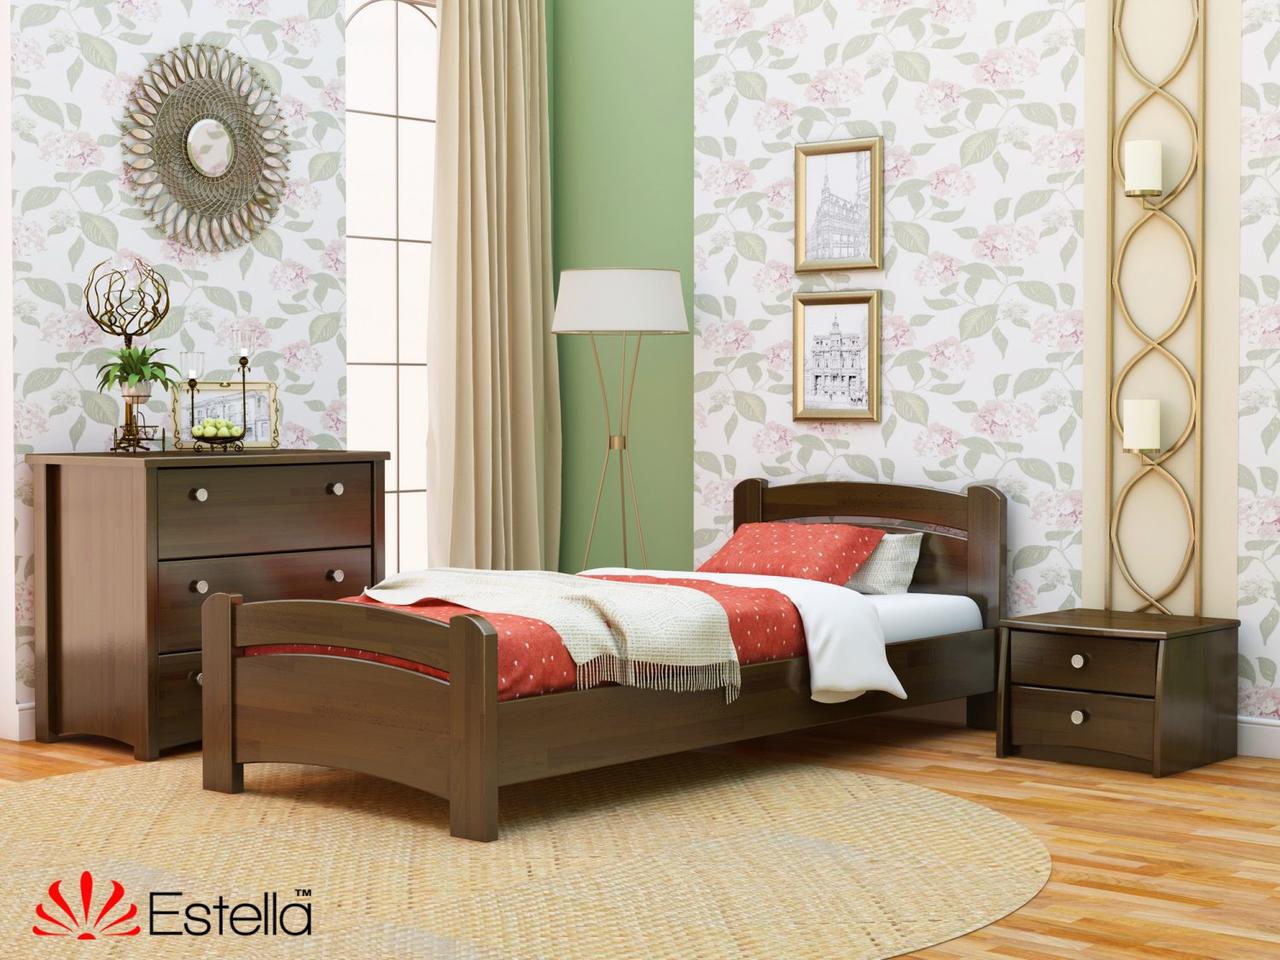 Ліжко двоспальне дерев'яне Венеція Бук Щит